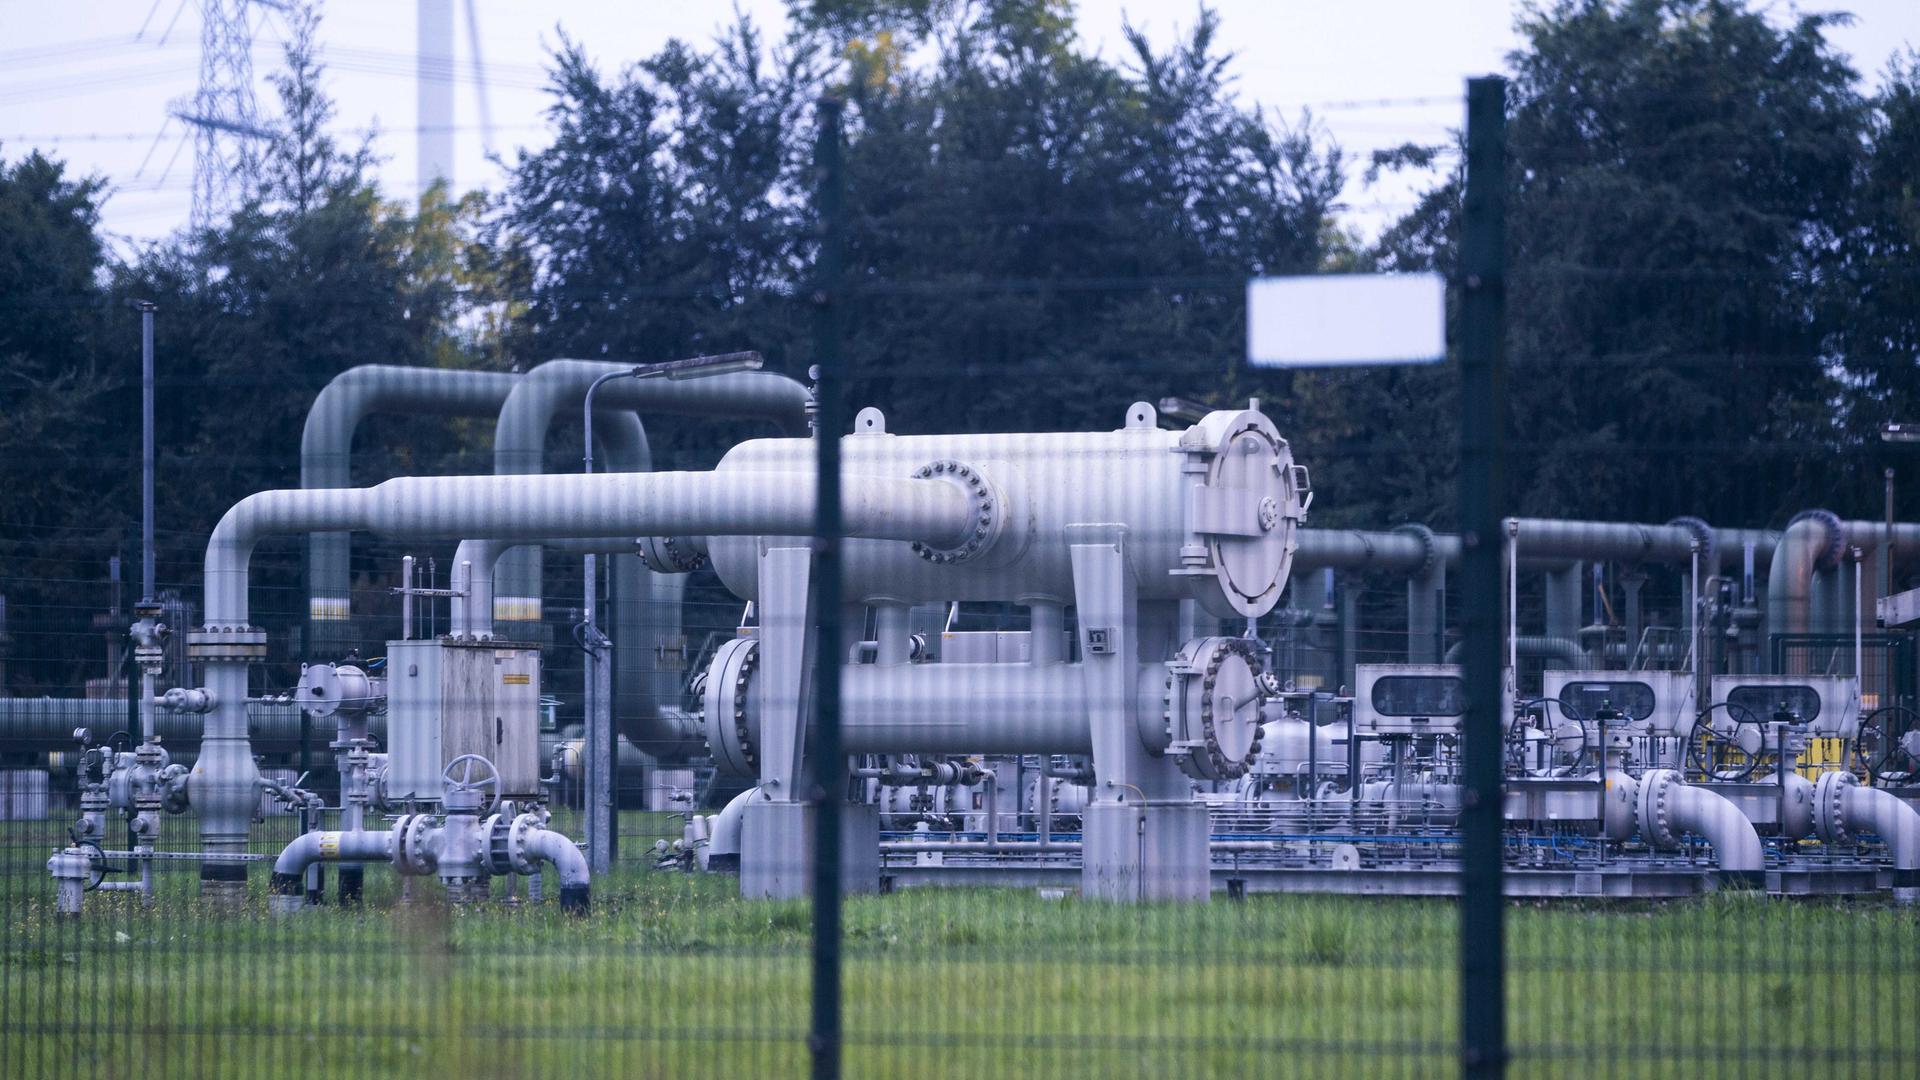 SCHEEMDA: Einer der NAM-Gasförderungsstandorte, an dem Gas aus dem Groninger Feld gefördert wurde. Nach sechzig Jahren wurde die Gasförderung in Groningen aufgrund der Erdbebengefahr und des Leids für die Bewohner eingestellt.